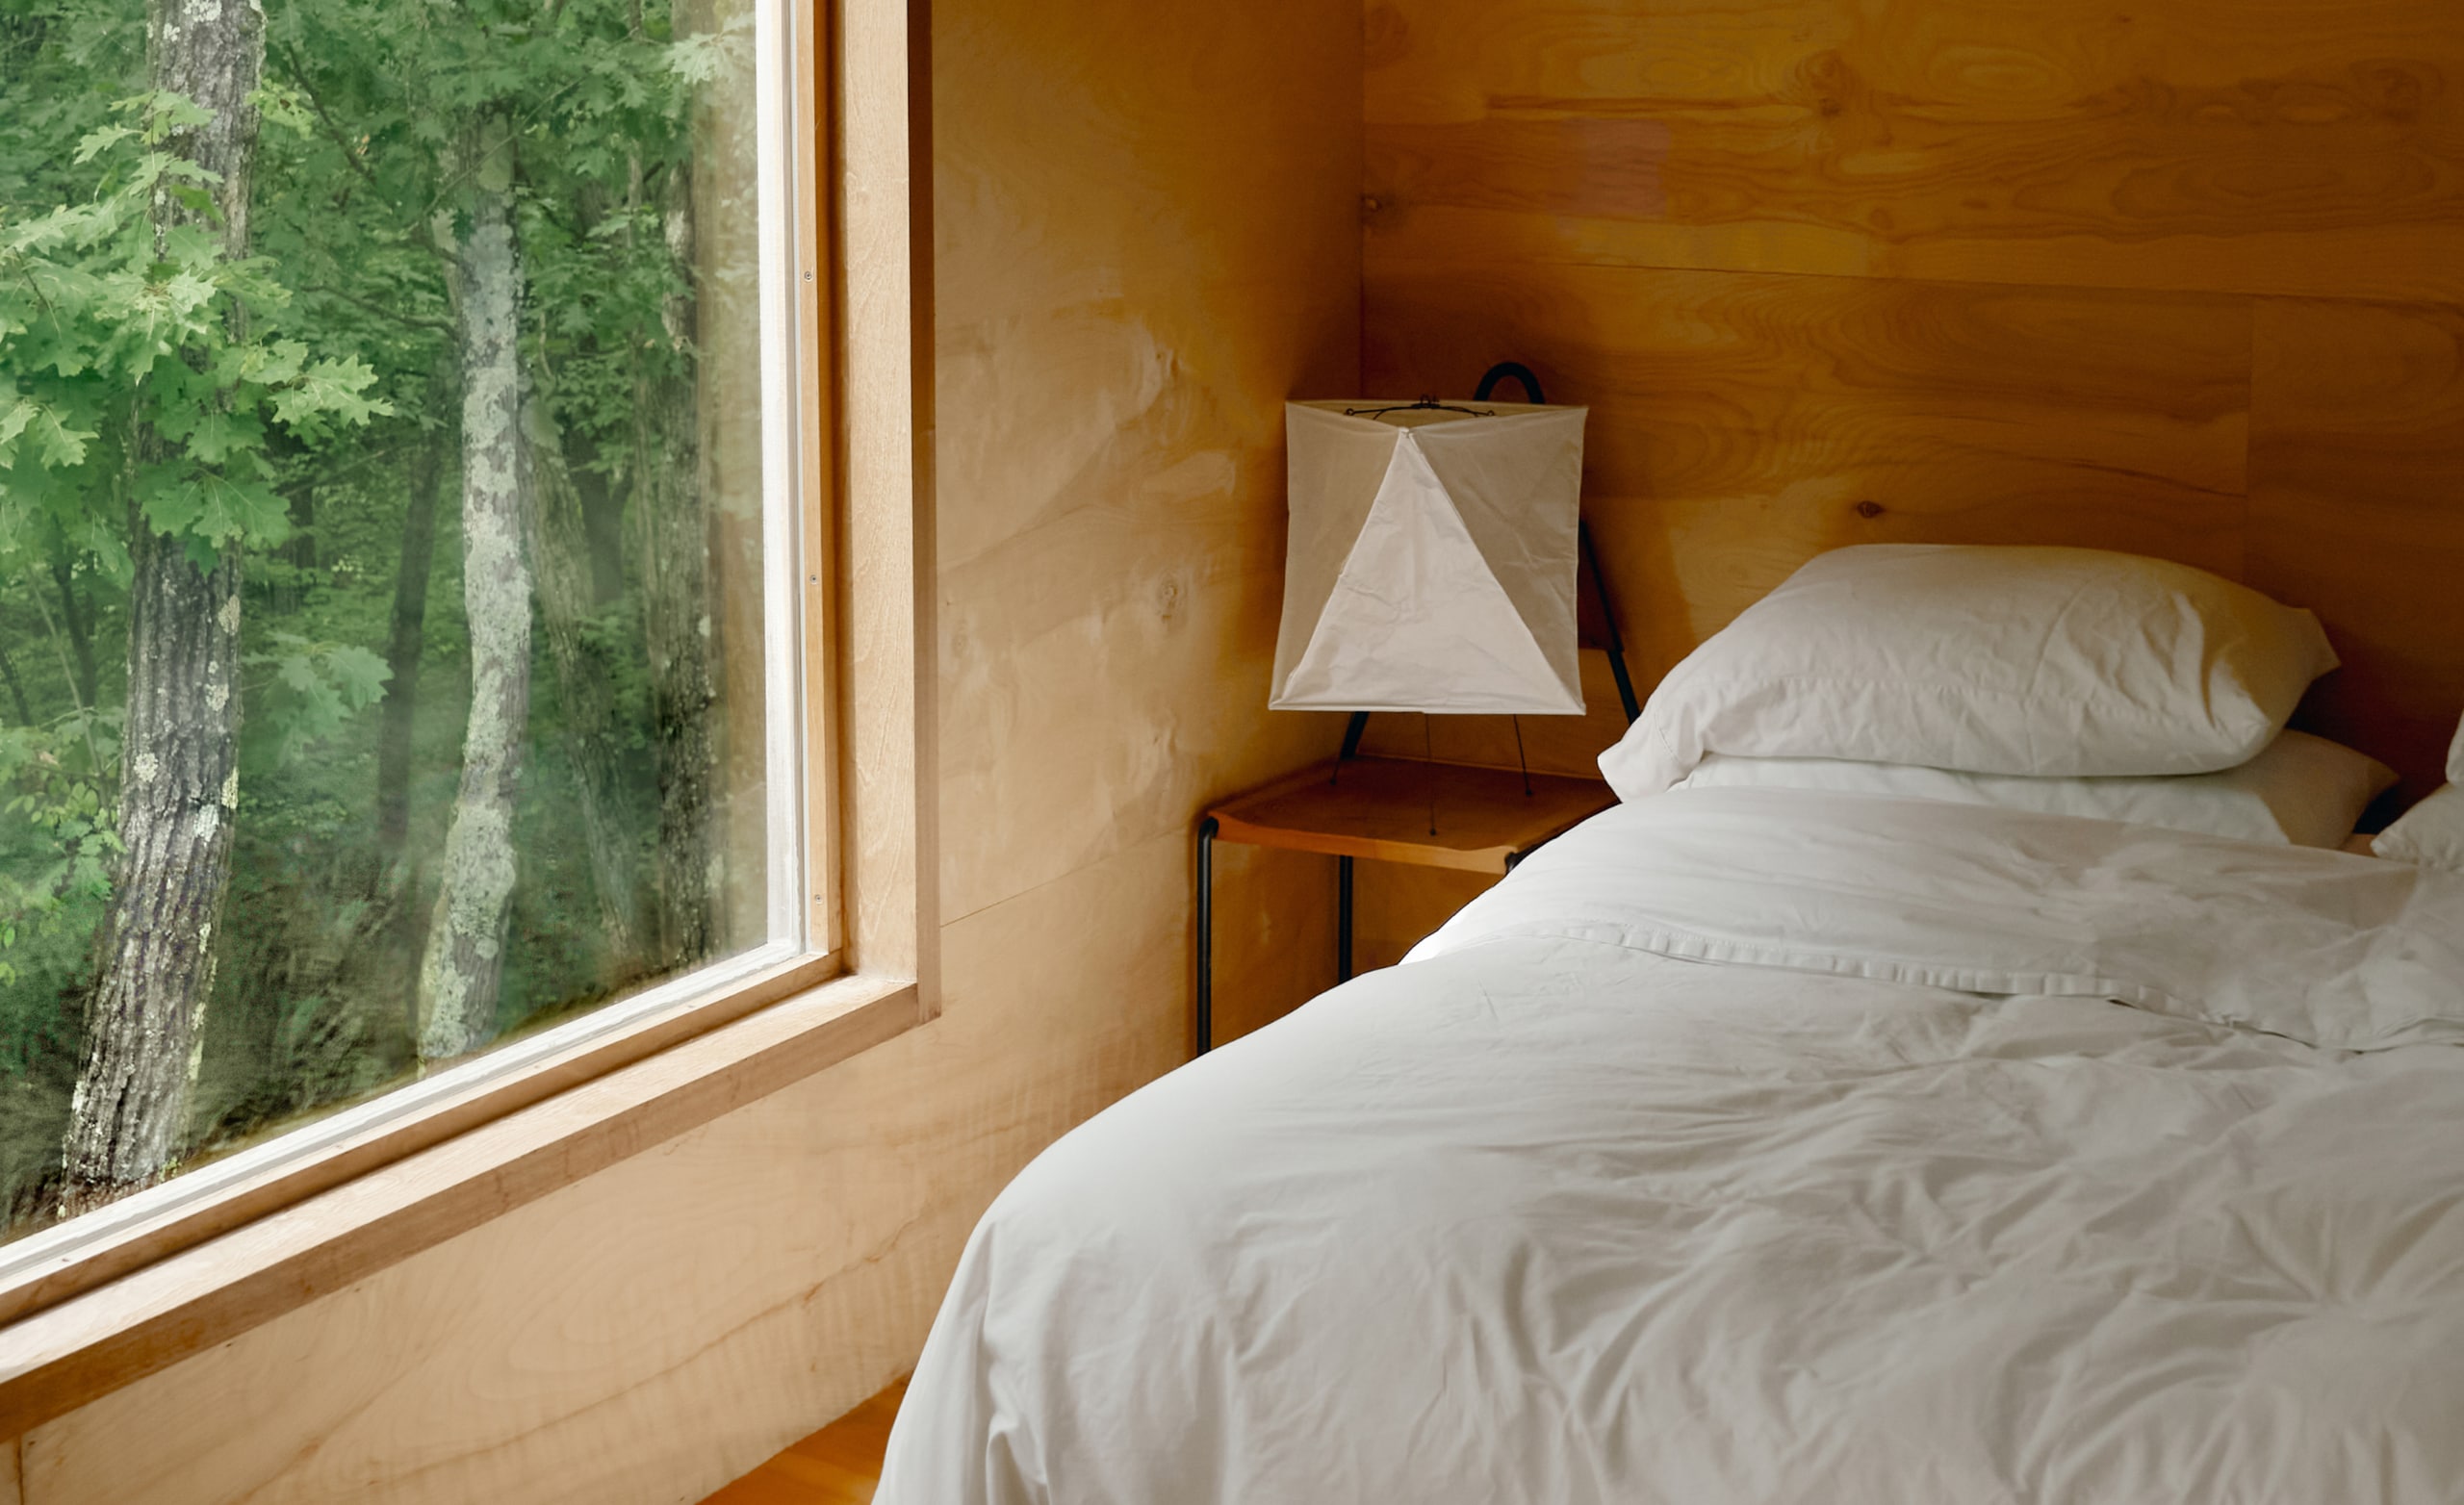 Un dormitorio con sábanas blancas en una cama recién hecha y una gran ventana que muestra los árboles que hay en el exterior.